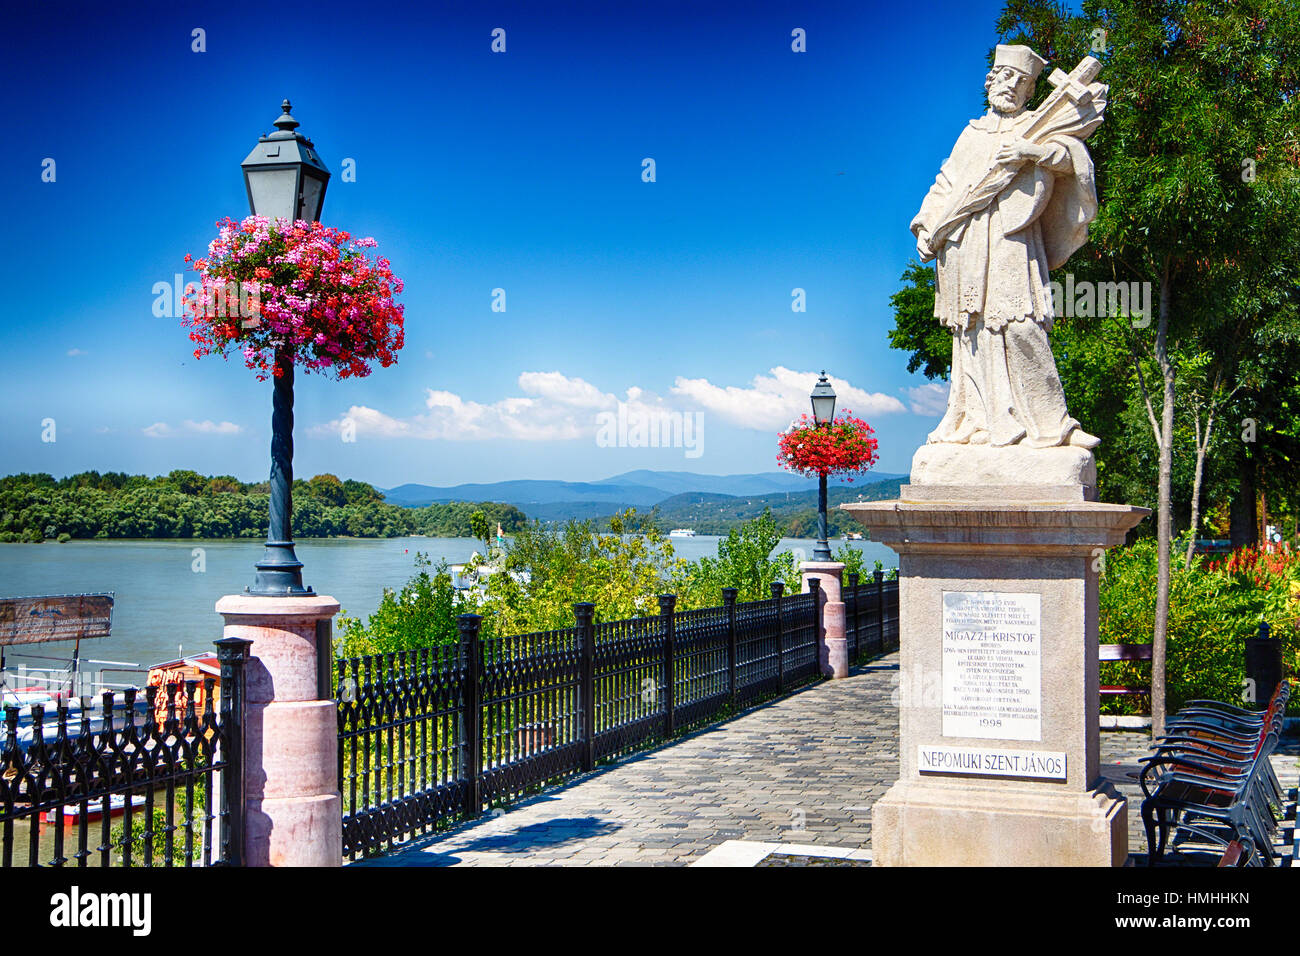 Niedrigen Winkel-Blick auf die Statue des Johannes von Nepomuk auf einem Park entlang der Donau, Vac, Komitat Pest, Ungarn Stockfoto